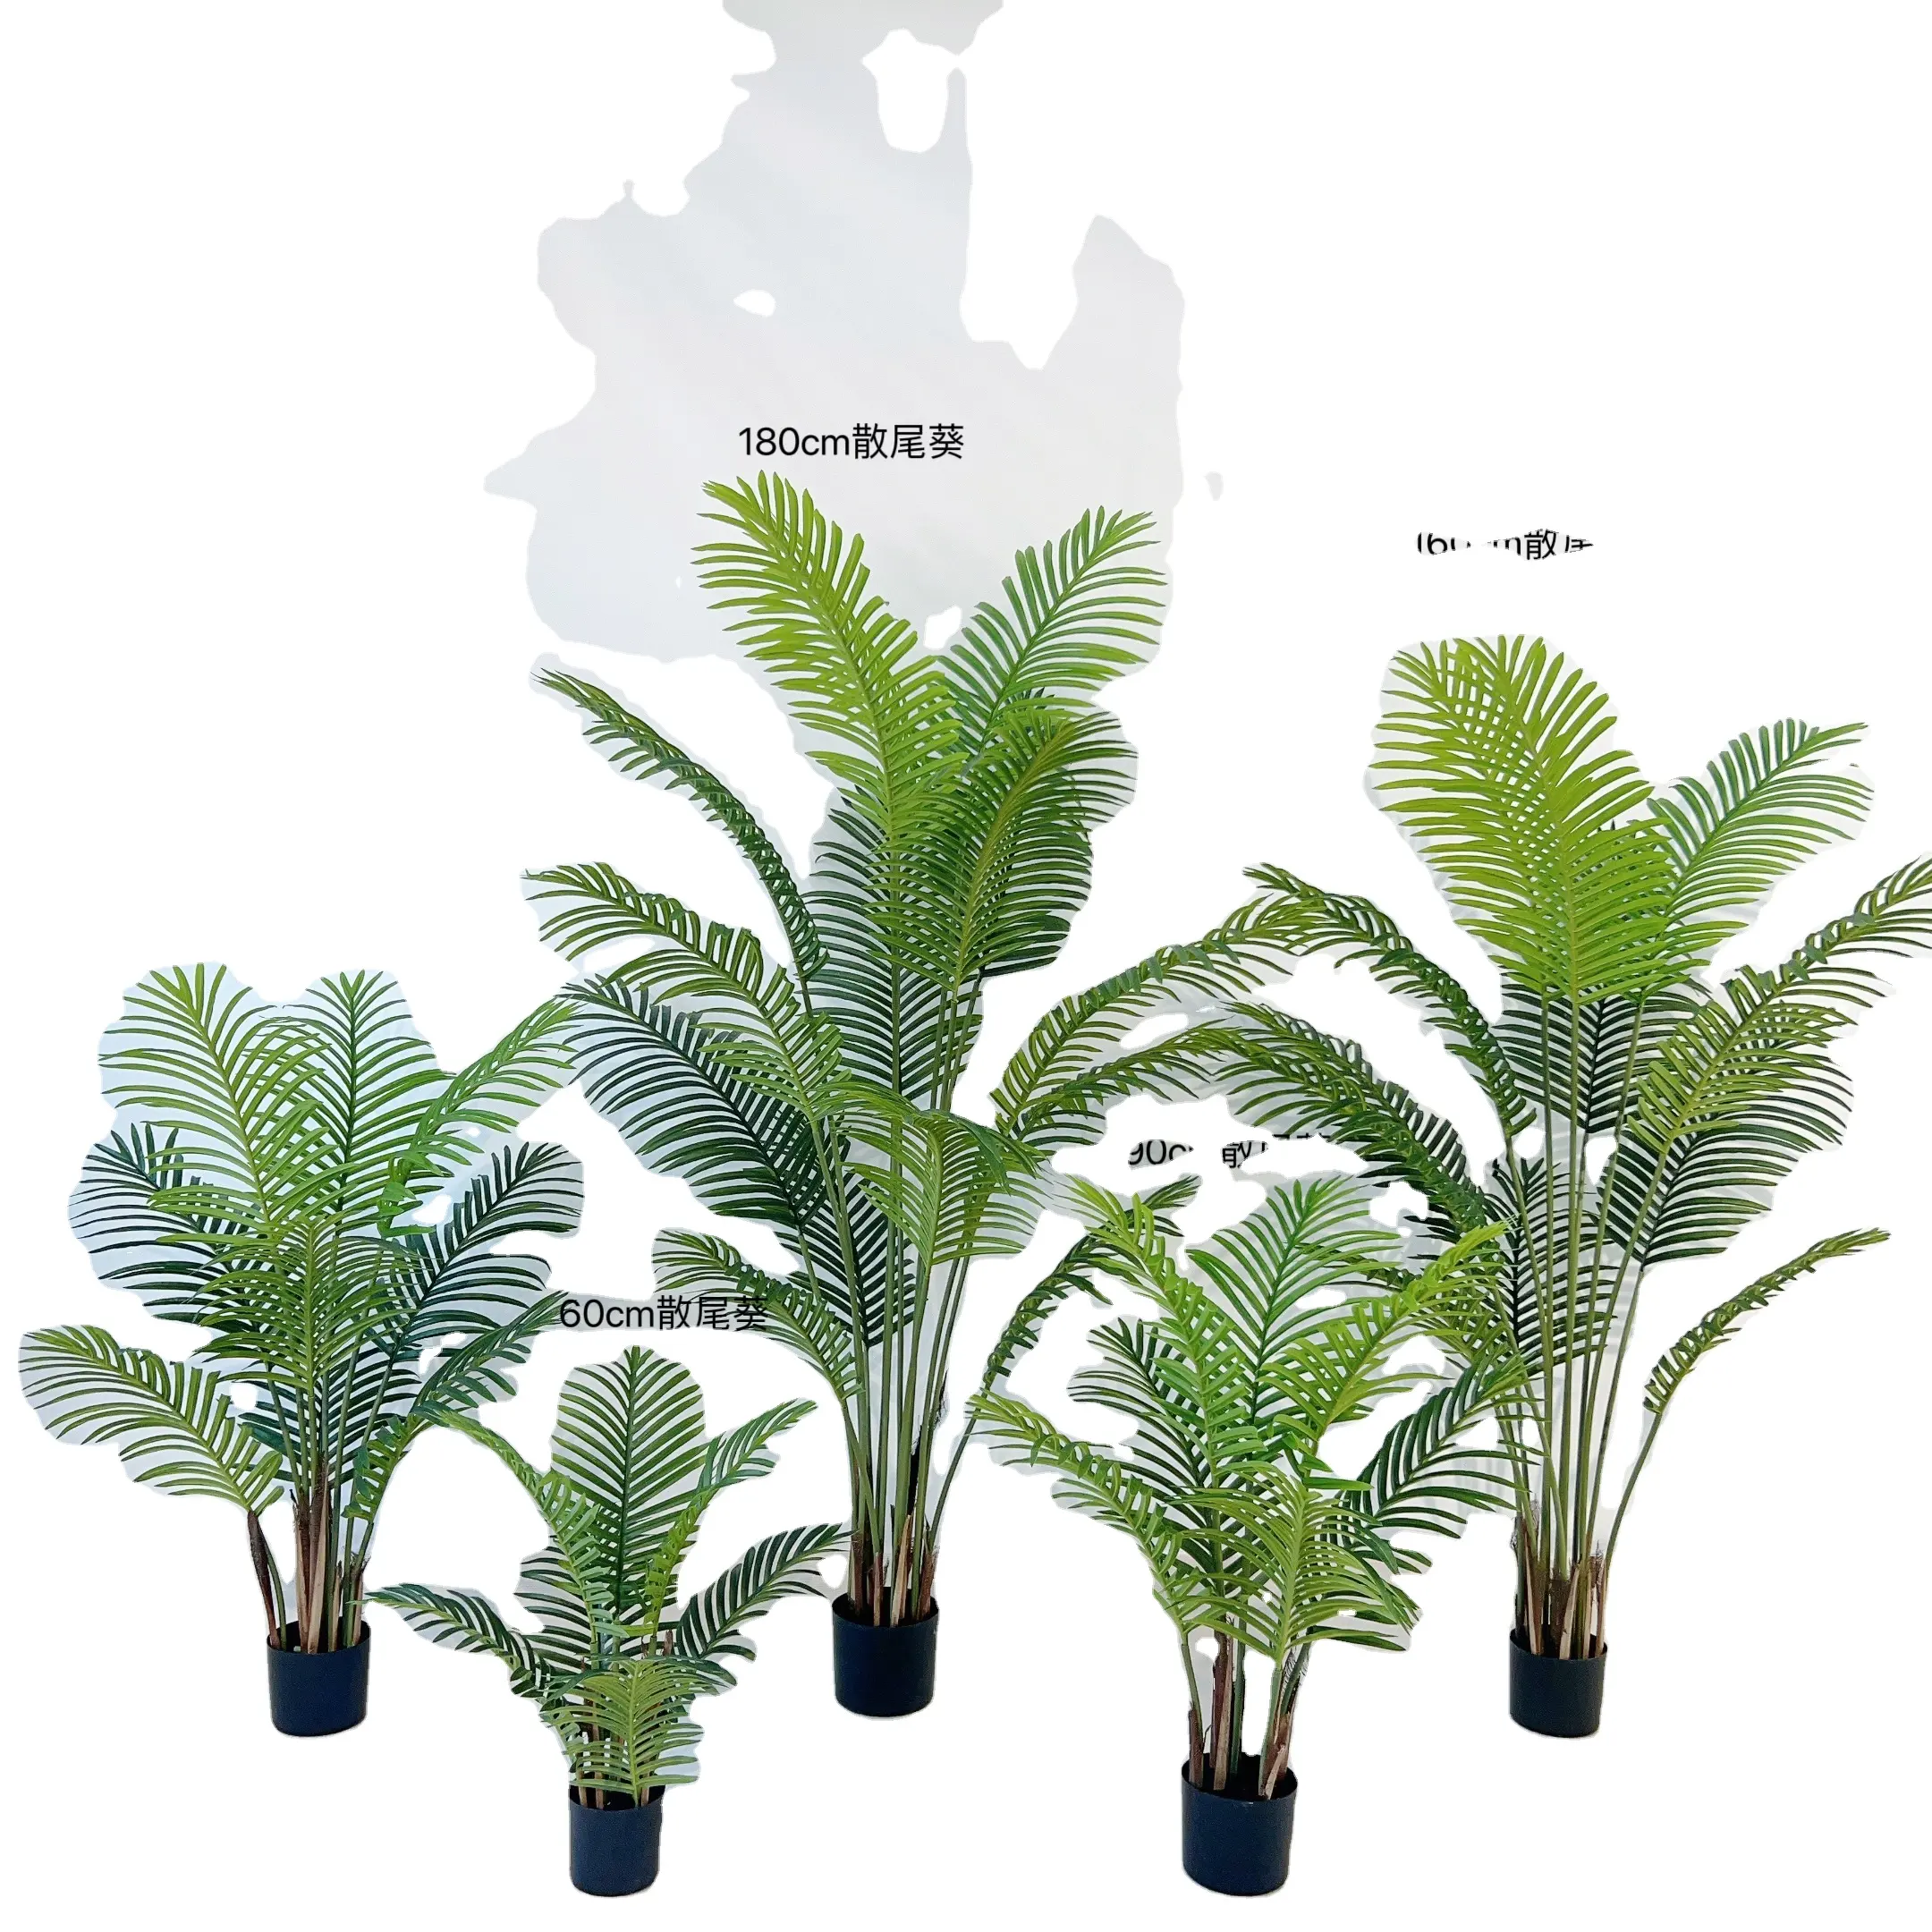 새로운 디자인 인공 야자수 고품질 1.2m/1.5m/1.8m 높이 인공 Chrysalidocarpus 지팡이 야자수